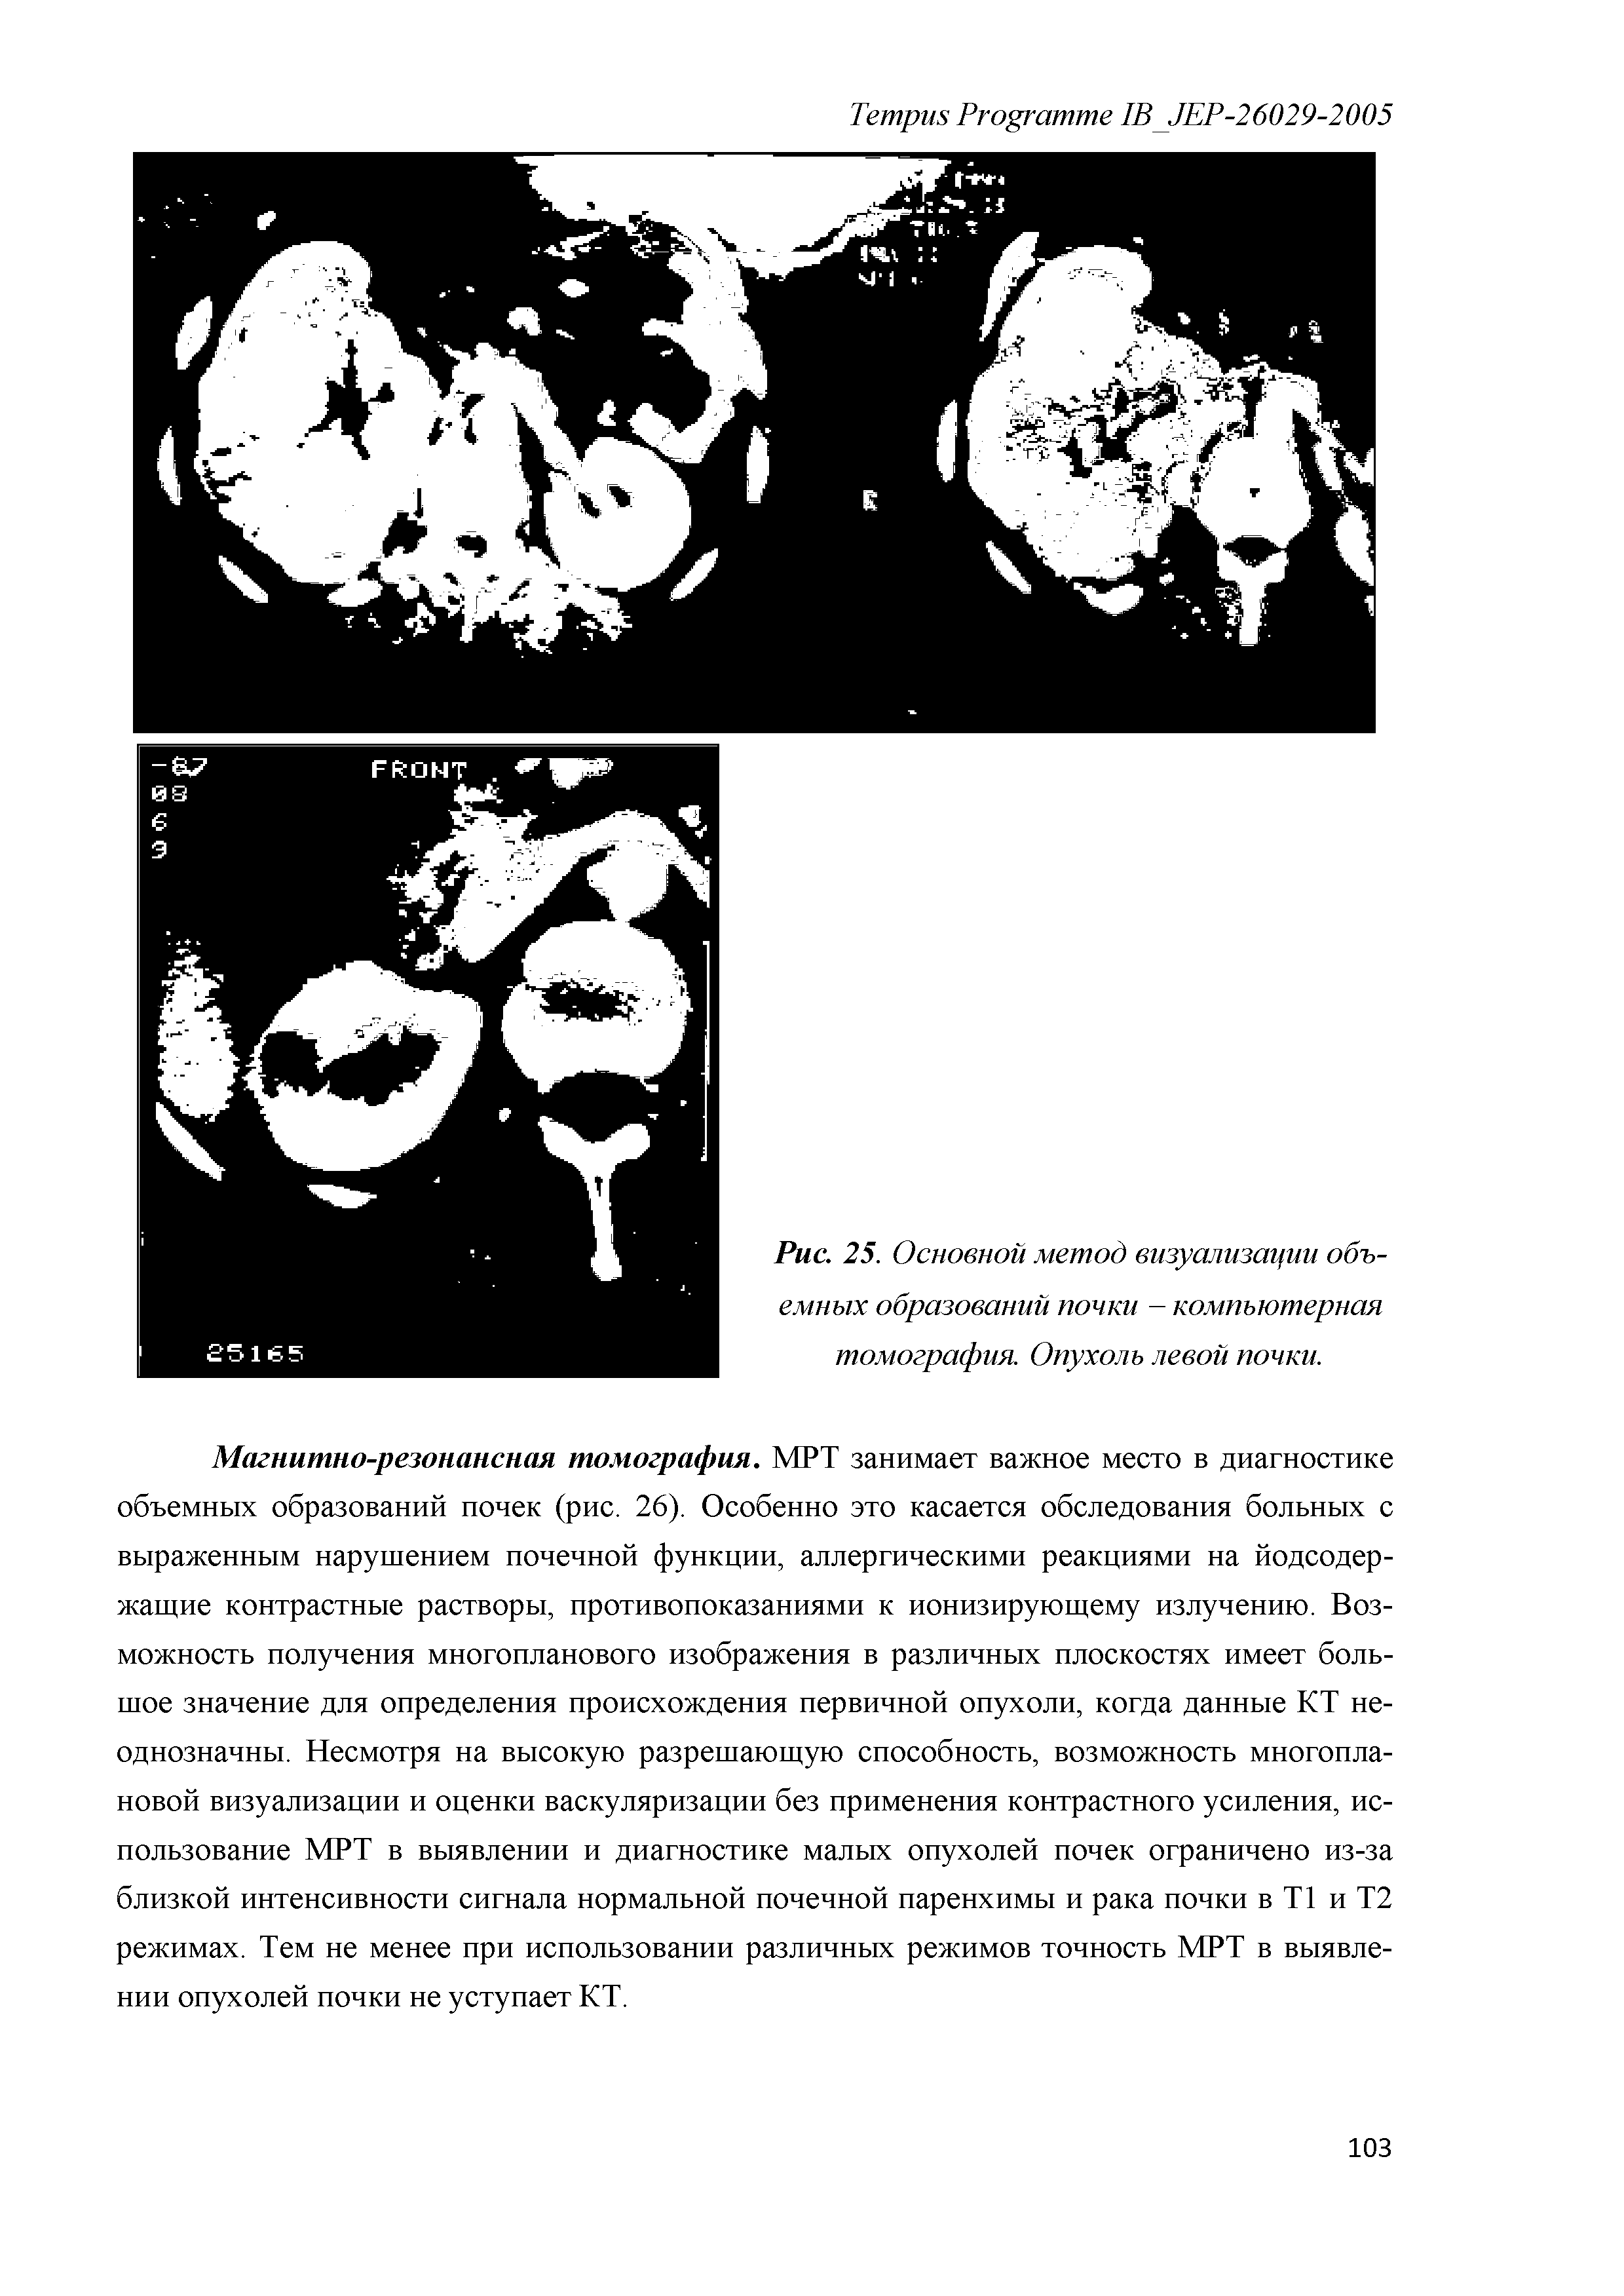 Рис. 25. Основной метод визуализации объемных образований почки - компьютерная томография. Опухоль левой почки.